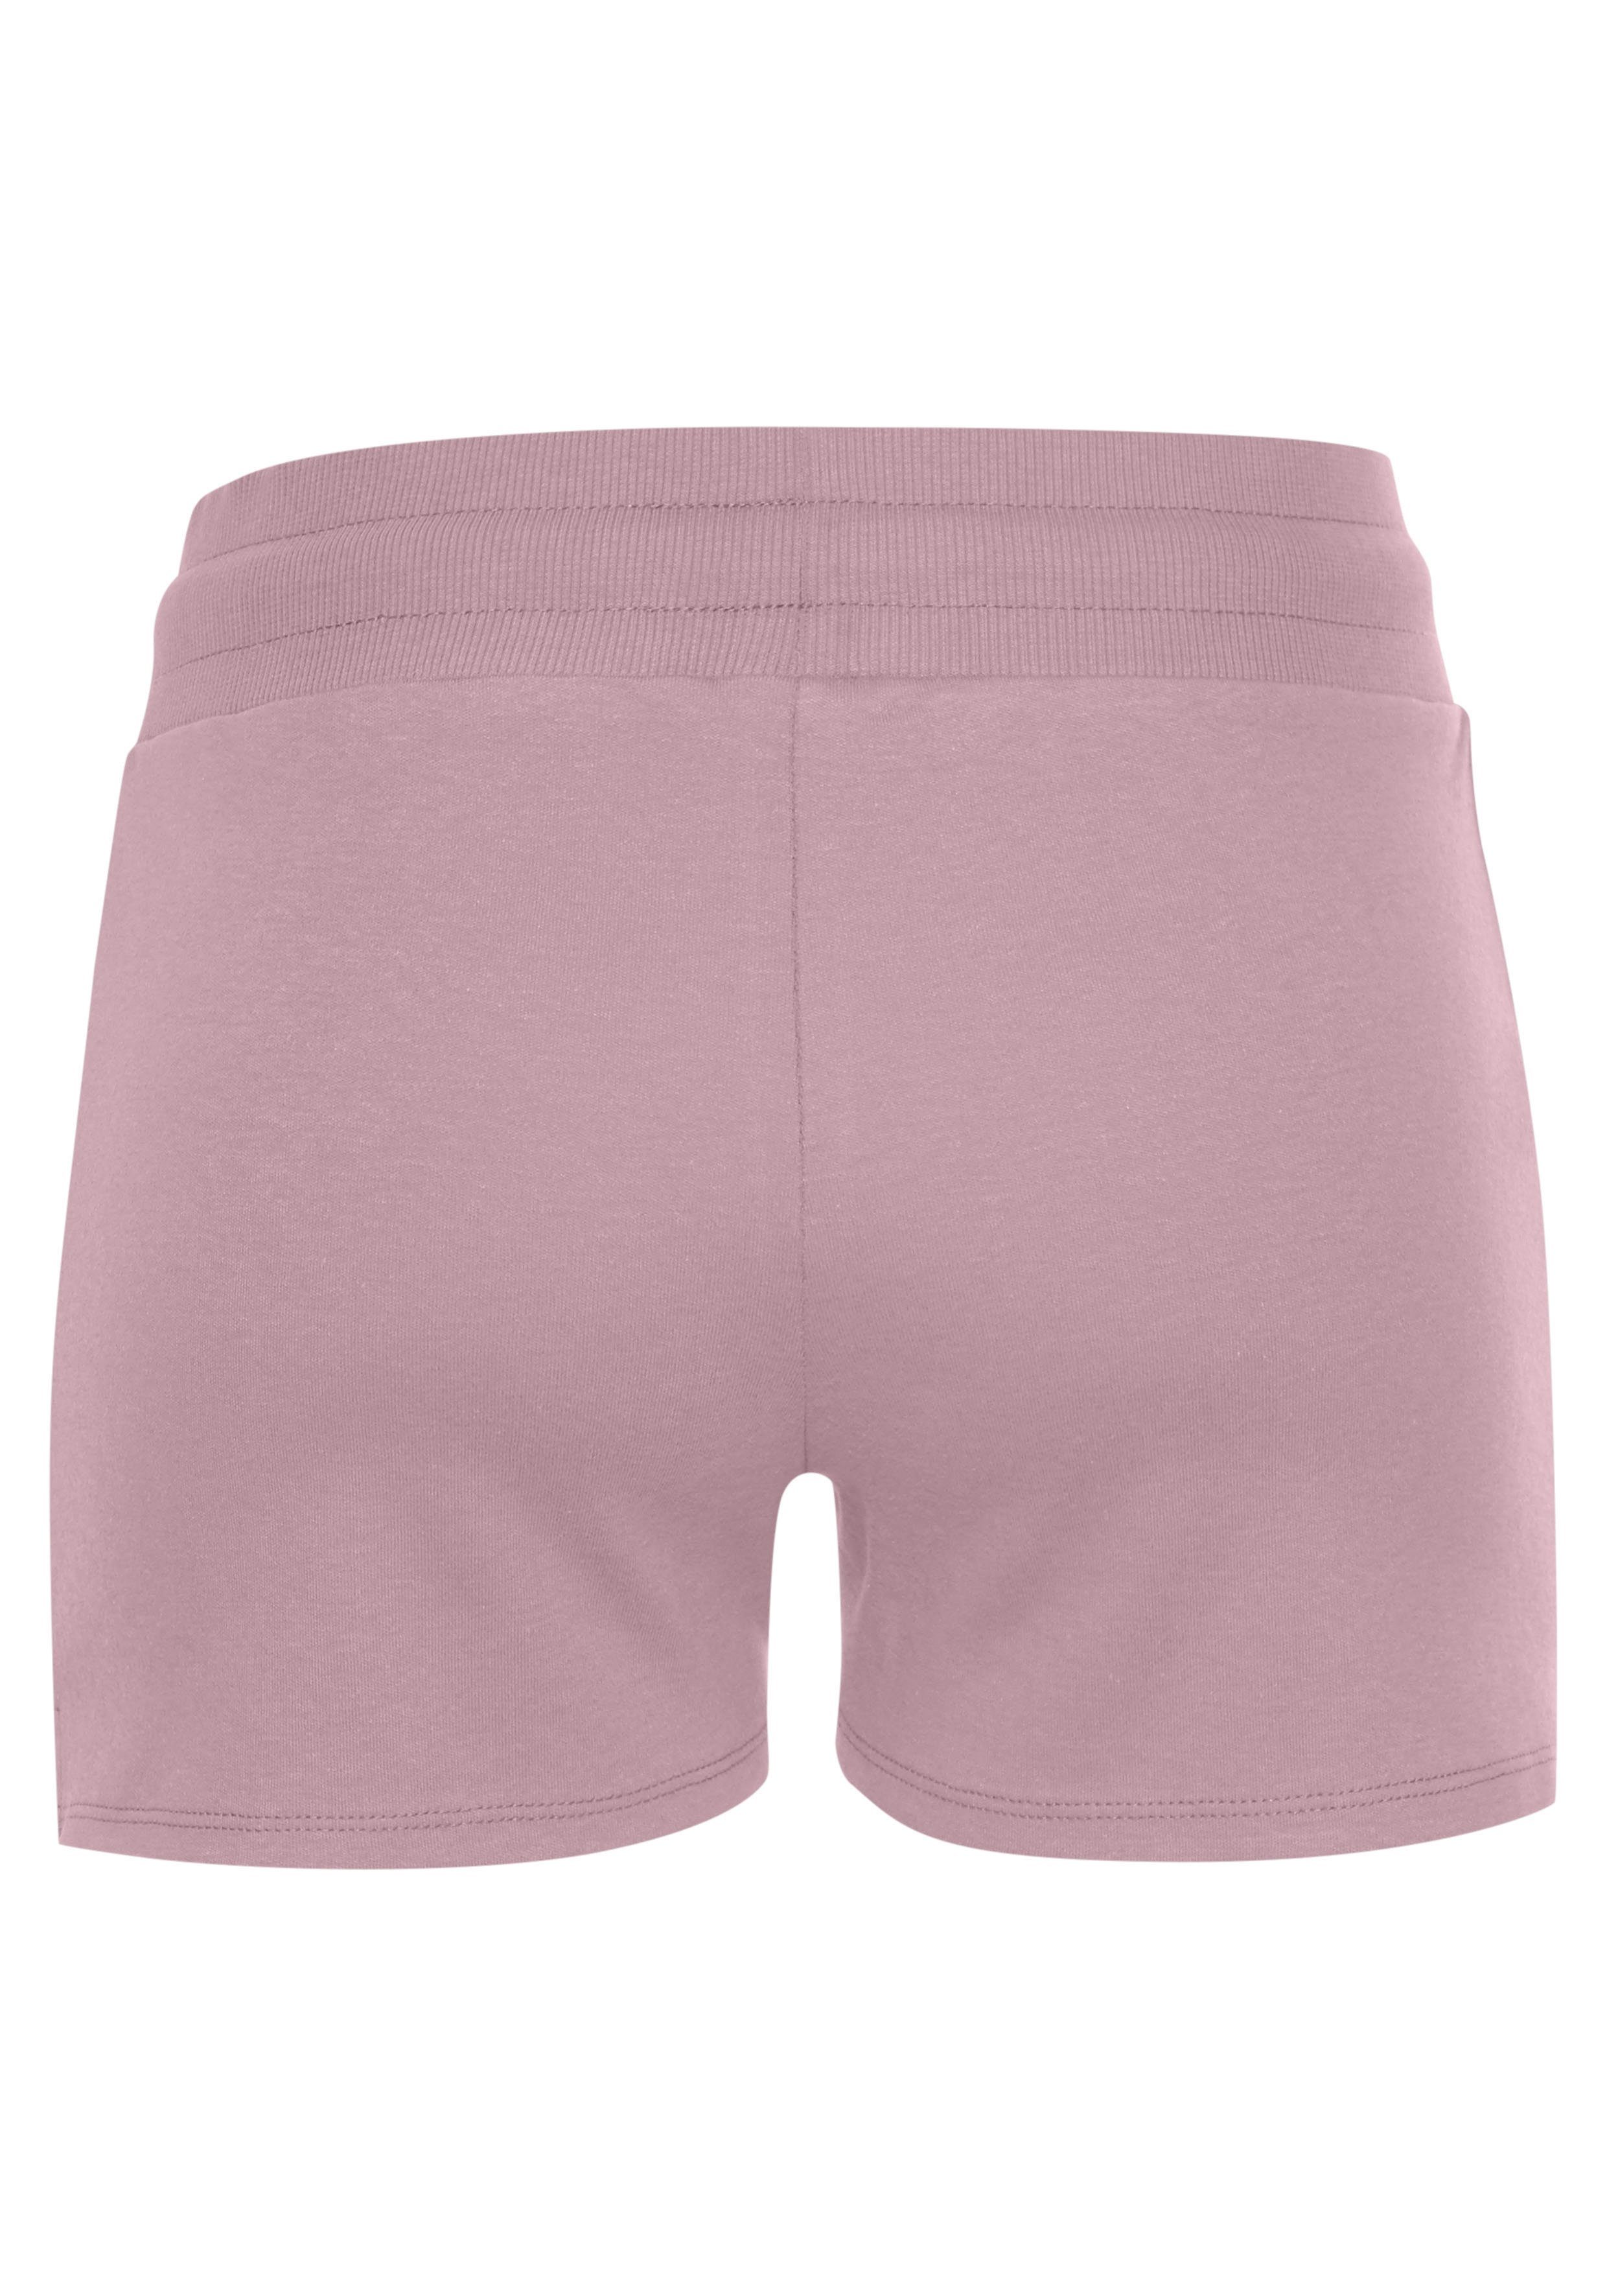 LASCANA ACTIVE Shorts kleinen rosa mit Seitenschlitzen